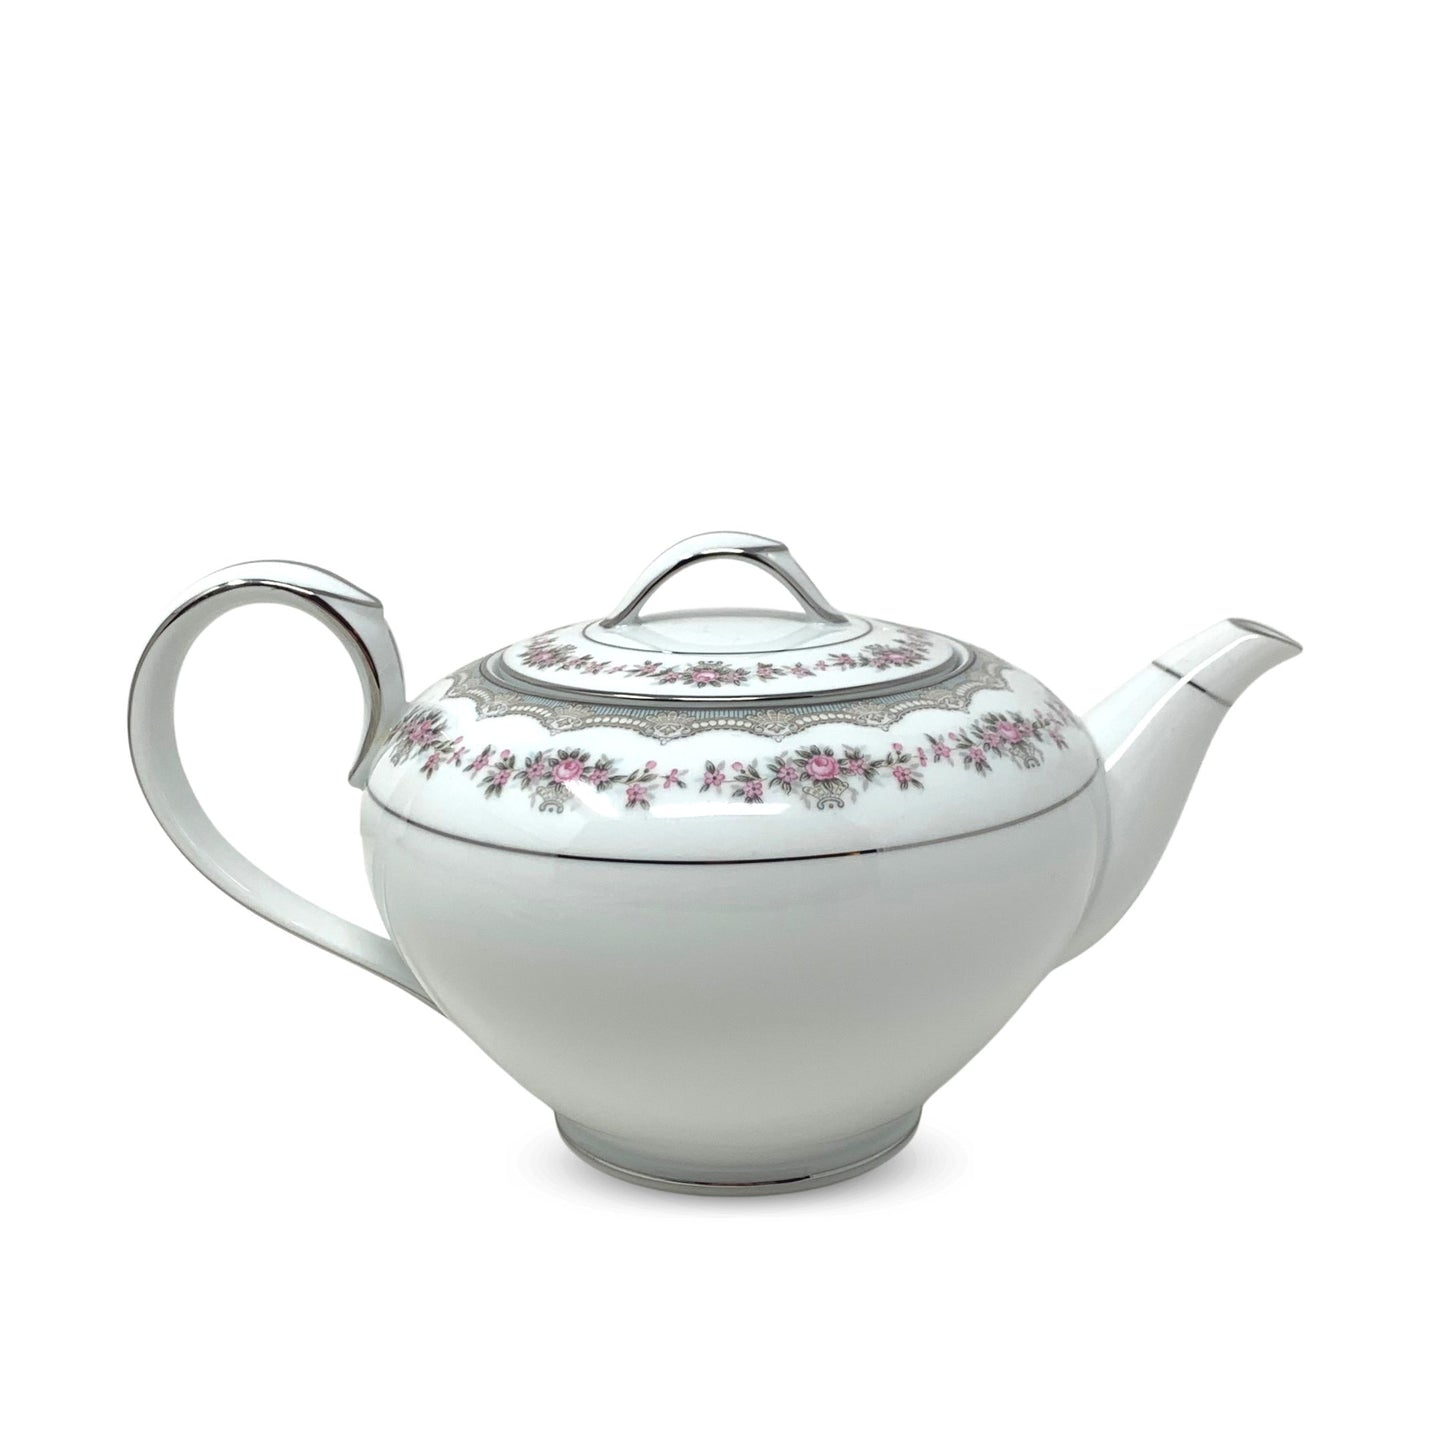 Noritake "Glenwood" Porcelain Teapot